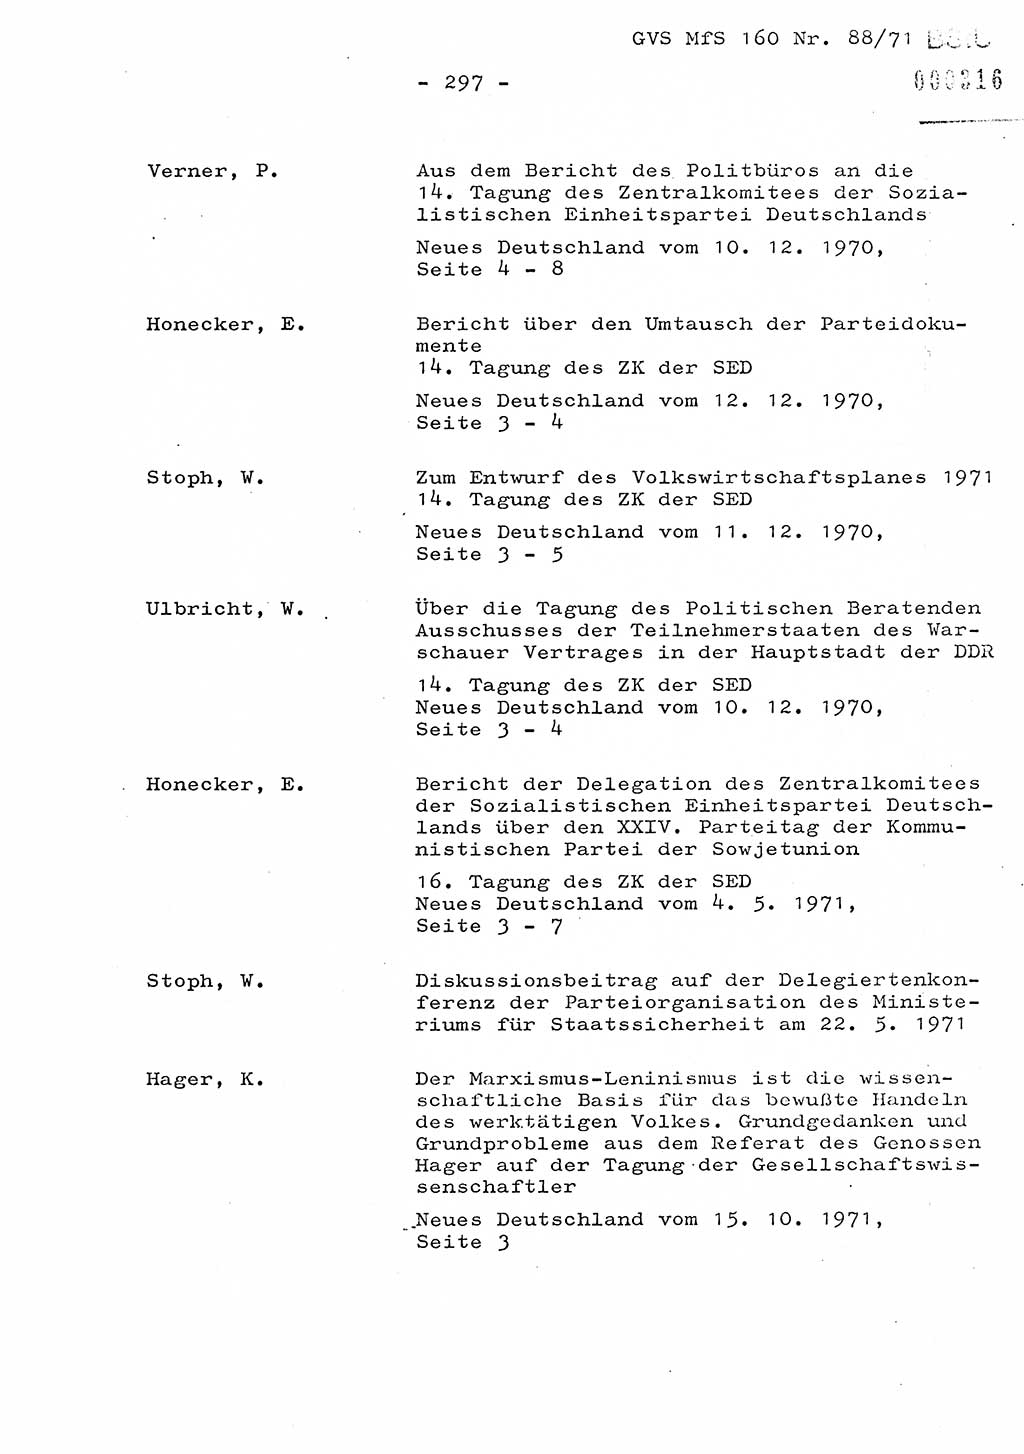 Dissertation Oberstleutnant Josef Schwarz (BV Schwerin), Major Fritz Amm (JHS), Hauptmann Peter Gräßler (JHS), Ministerium für Staatssicherheit (MfS) [Deutsche Demokratische Republik (DDR)], Juristische Hochschule (JHS), Geheime Verschlußsache (GVS) 160-88/71, Potsdam 1972, Seite 297 (Diss. MfS DDR JHS GVS 160-88/71 1972, S. 297)